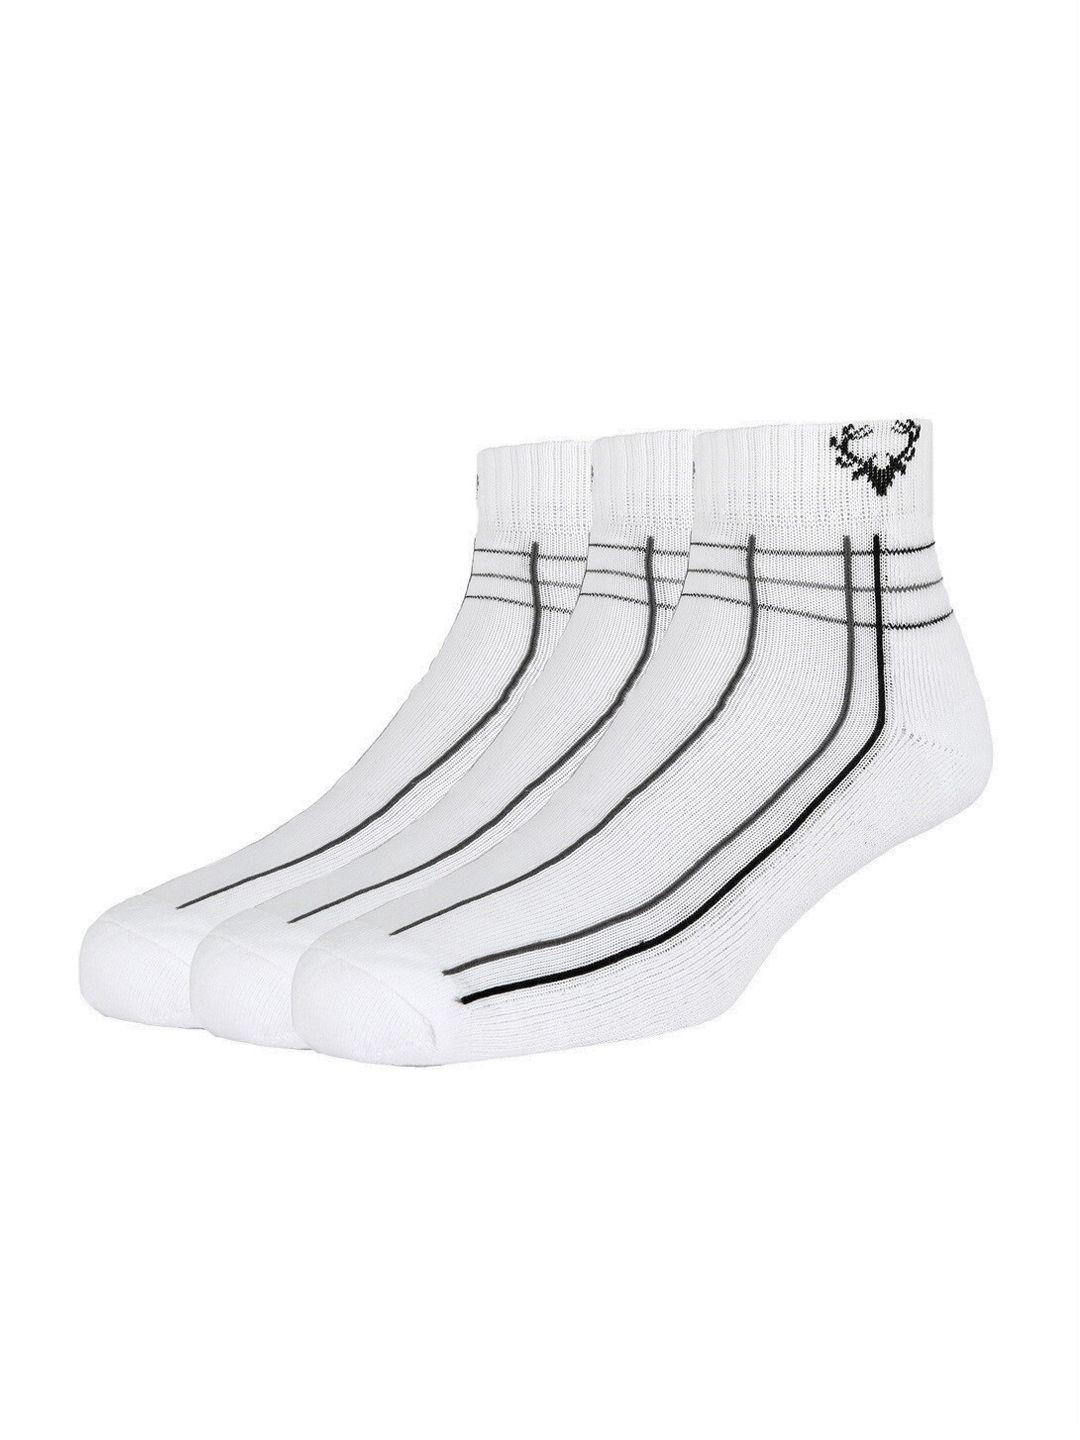 allen-solly-men-pack-of-3-white-&-black-striped-ankle-length-socks